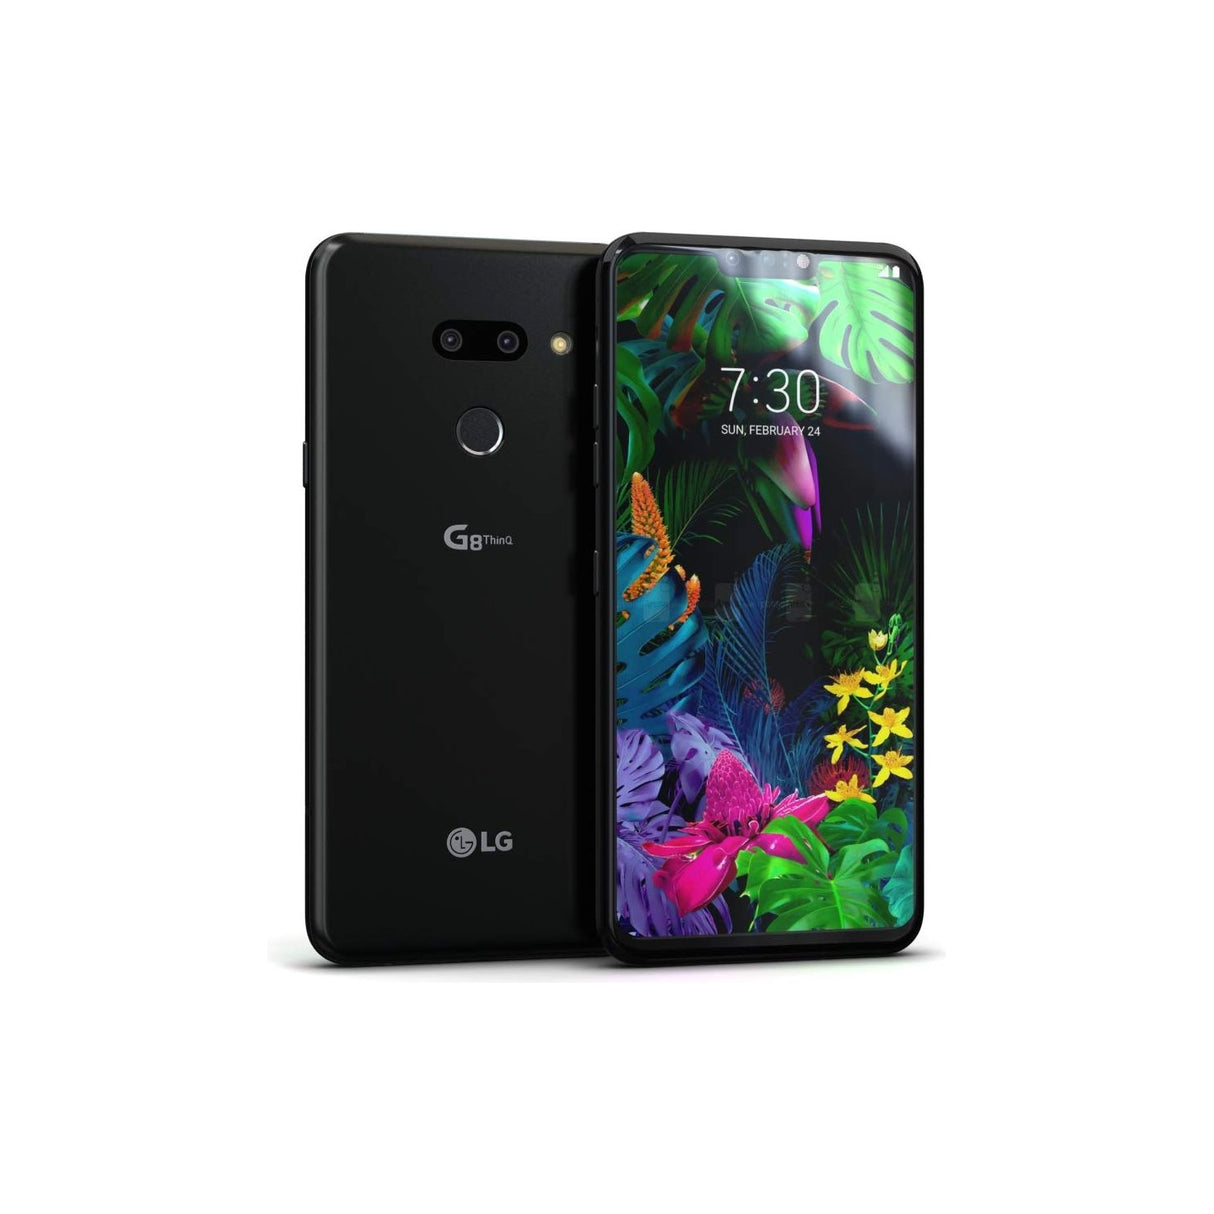 LG G8 ThinQ - 128 GB - Aurora Black - Verizon - CDMA/GSM